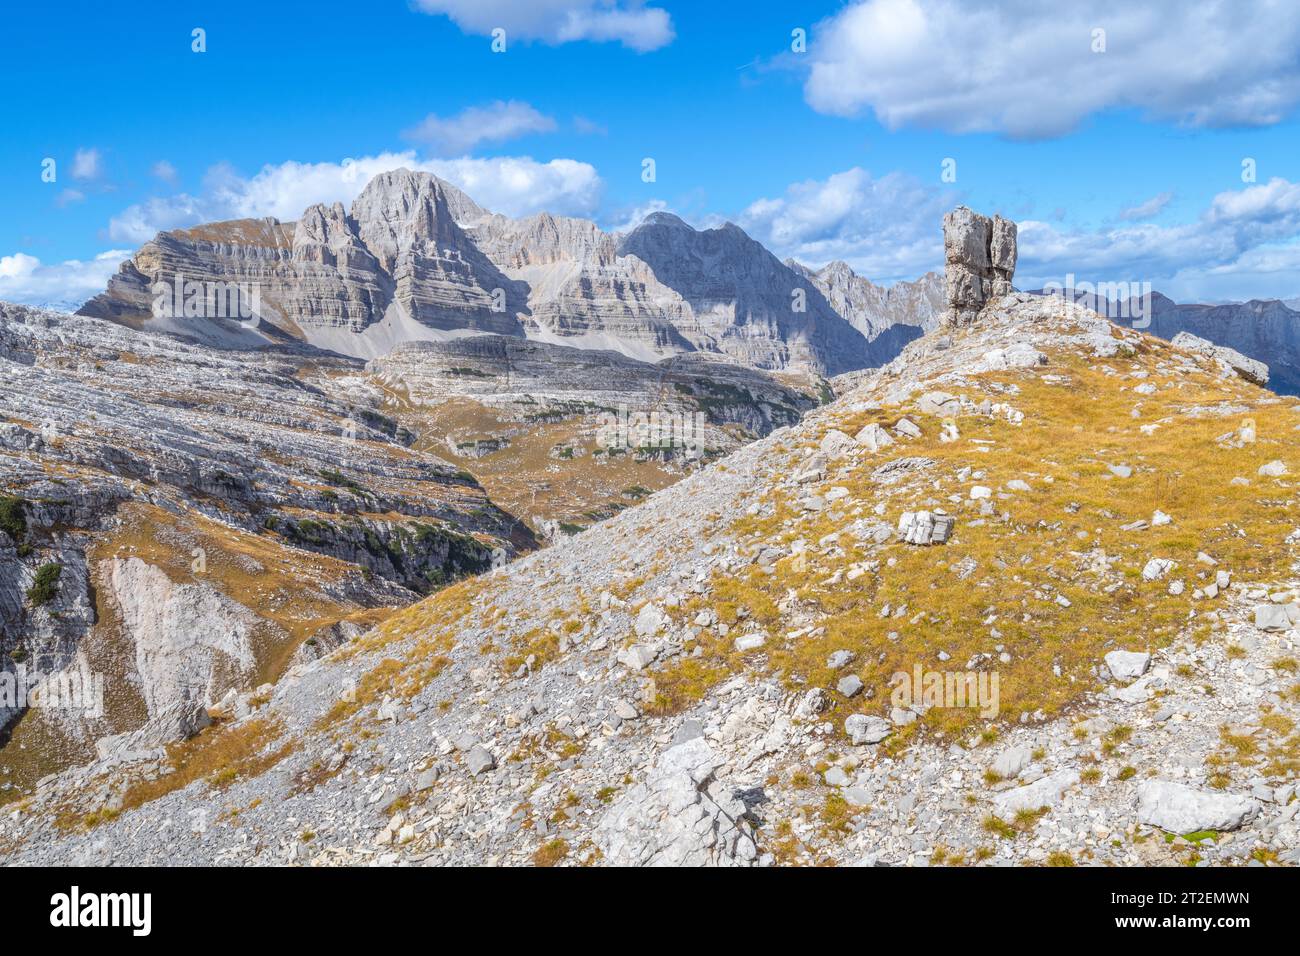 Großer freistehender Kalkstein gegen geschichtete Gebirgszüge in den Brenta-Dolomiten in Italien, Herbstsaison Stockfoto